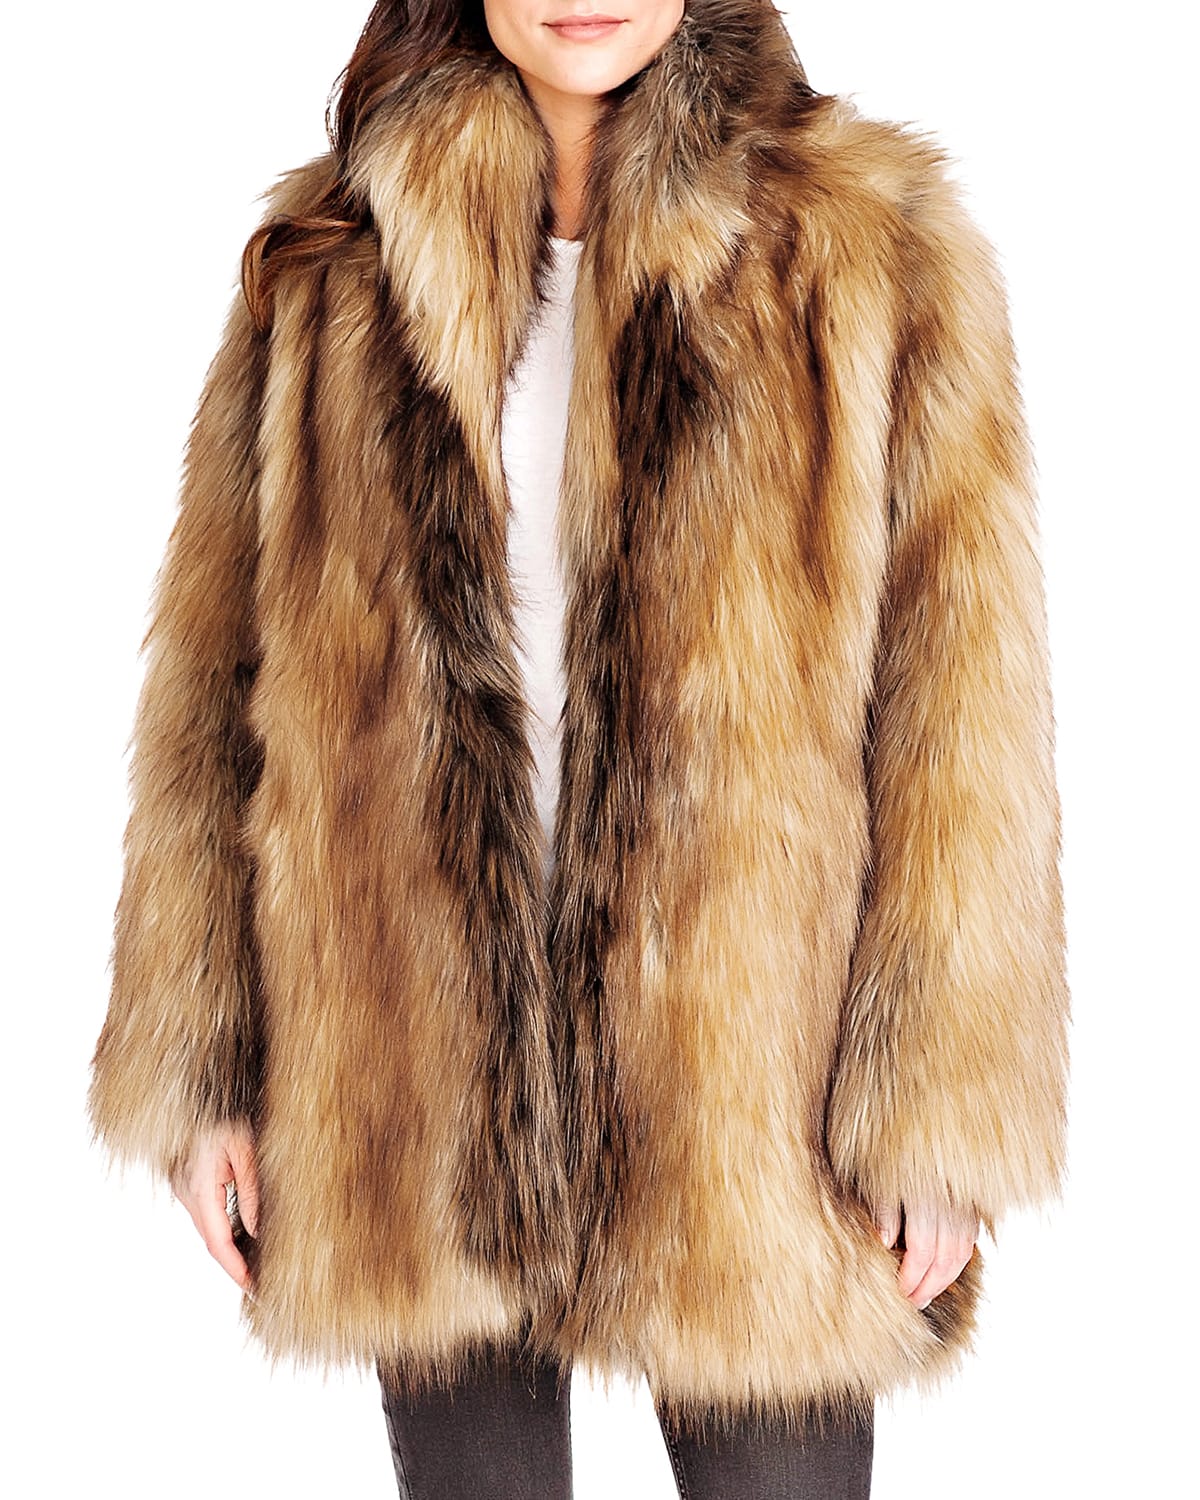 Fabulous Furs Limited Edition Faux Fur Coat